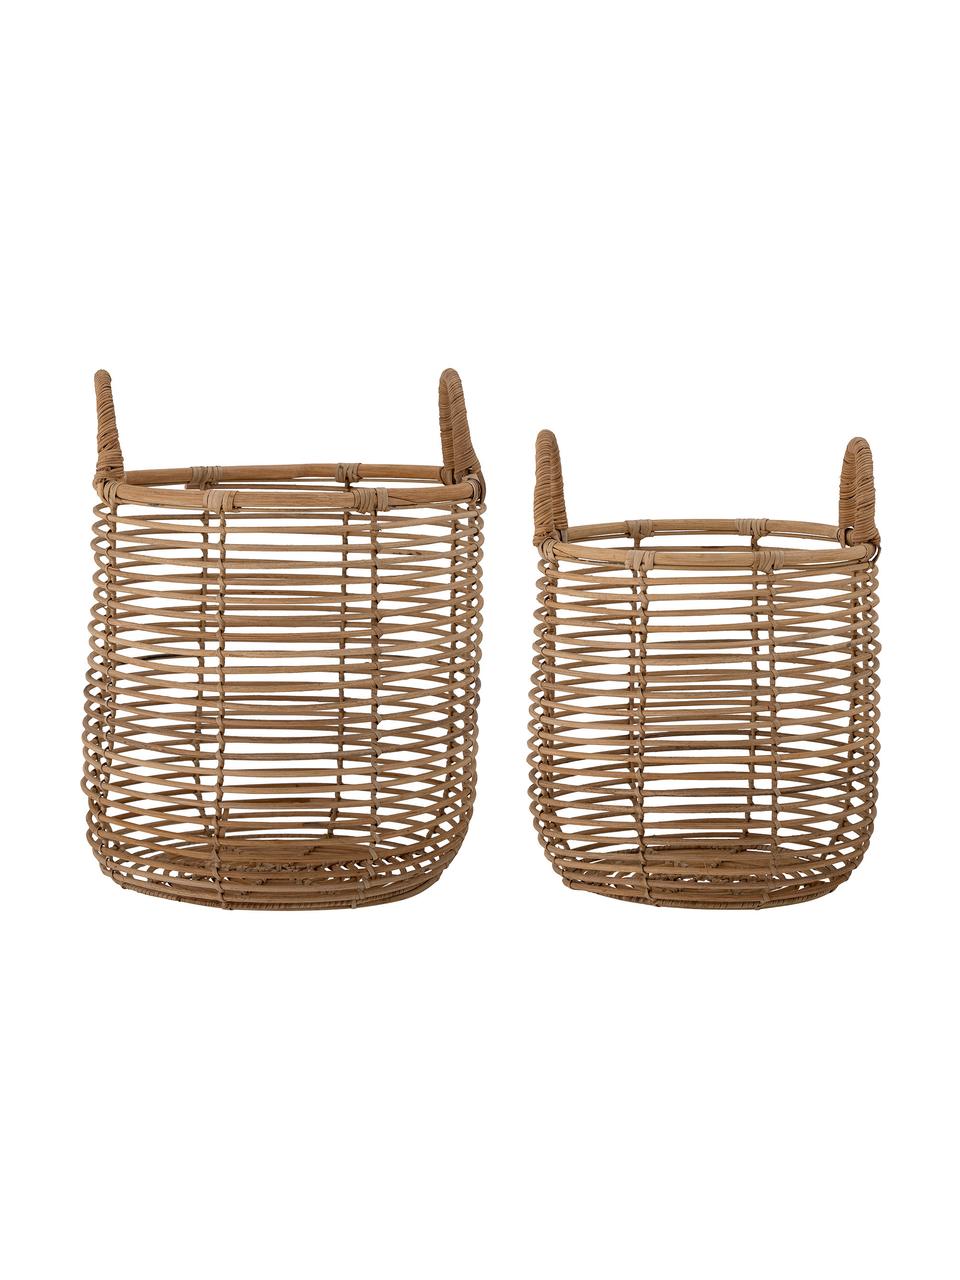 Set de cestas artesanales de ratán Lyng, 2 uds., Ratán, Beige, Set de diferentes tamaños